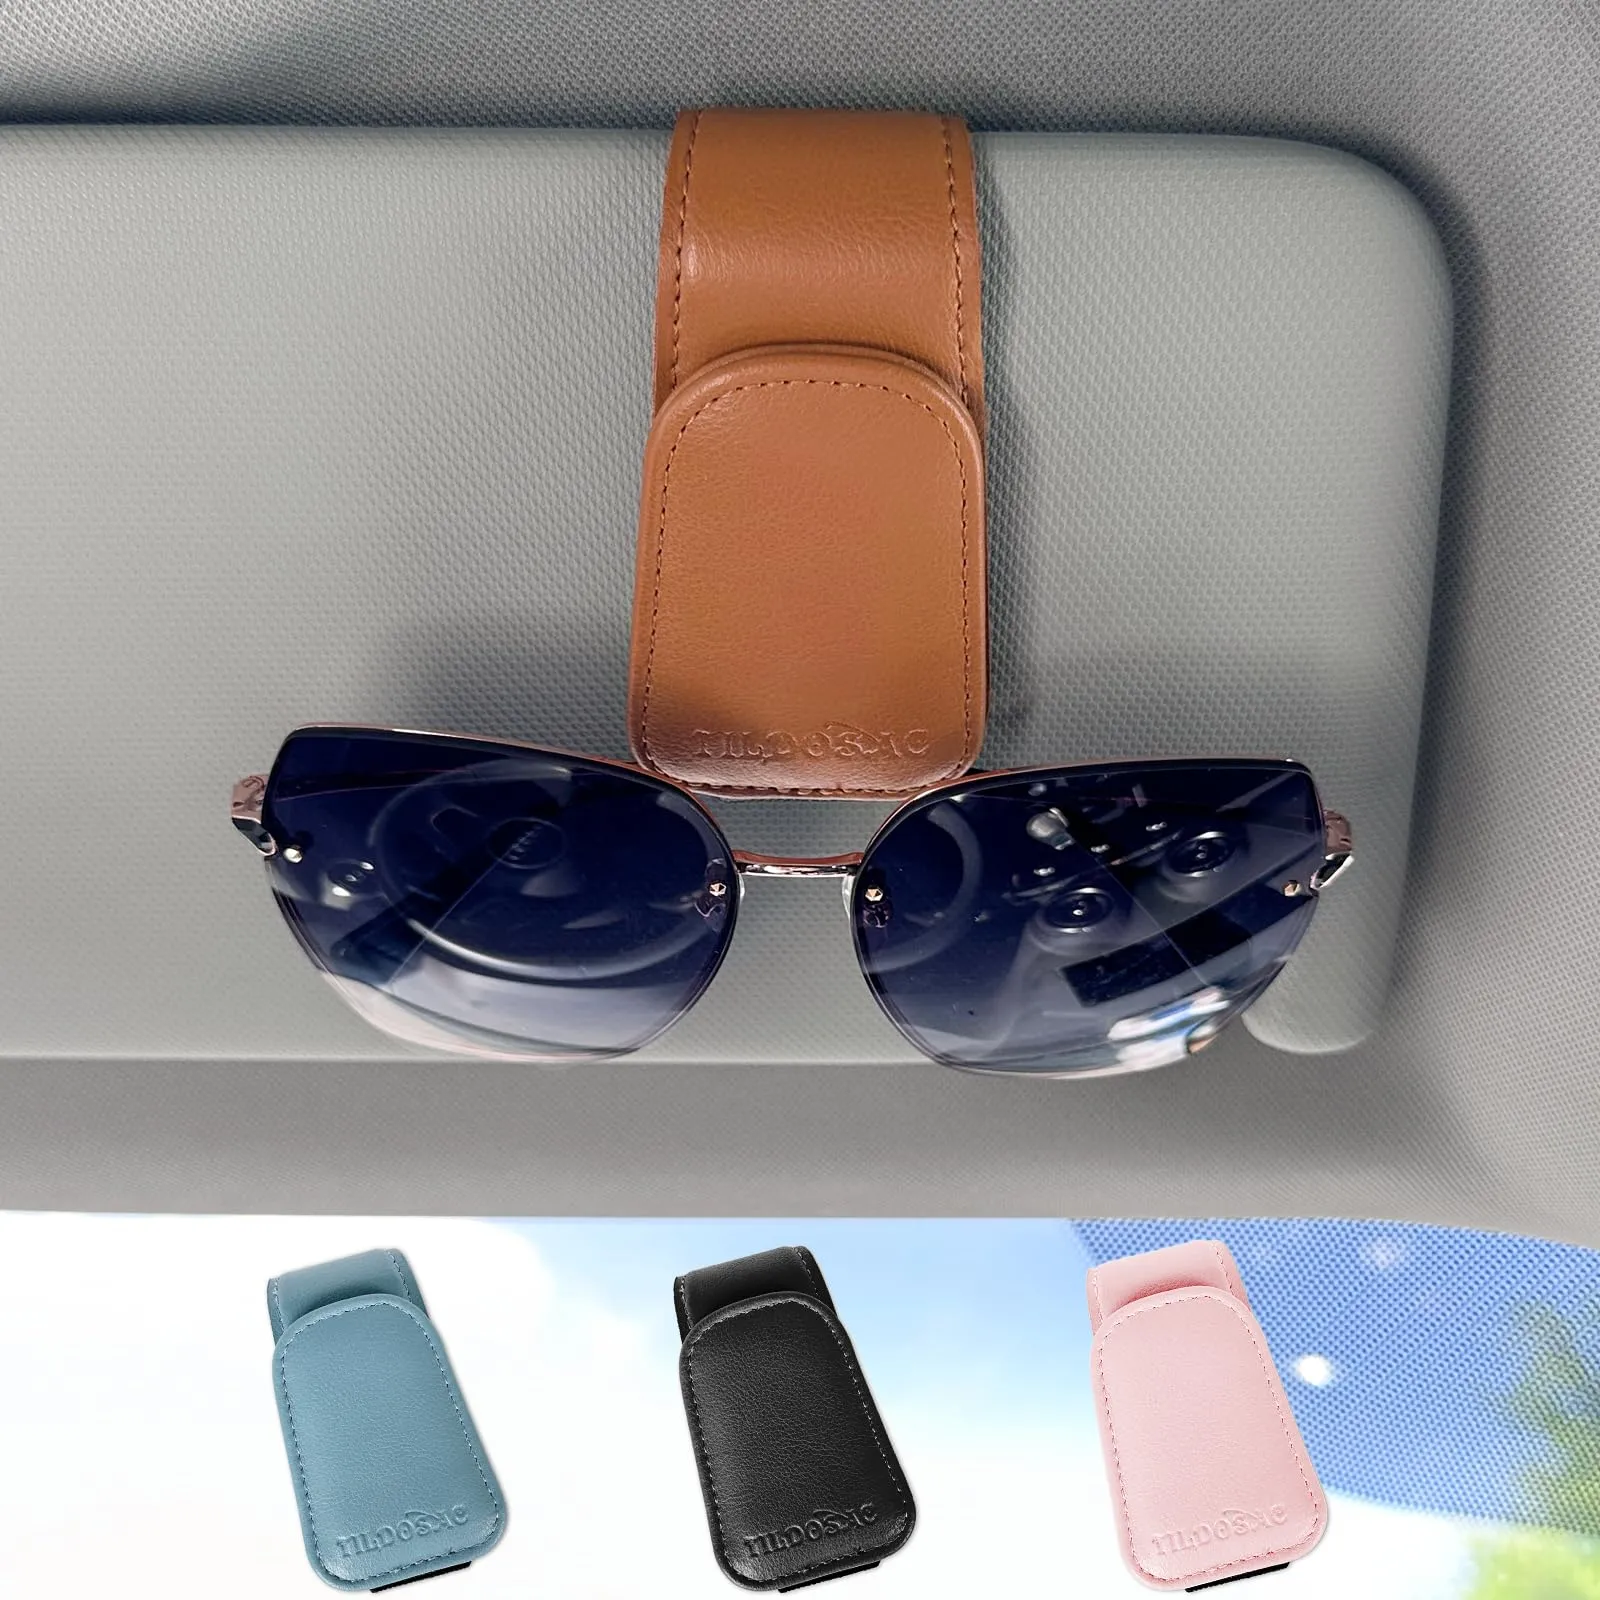 자동차 바이저, 내구성 및 스크래치 저항성 선글라스 주최자를위한 선글래스 홀더 주최자 클립 자기 클립